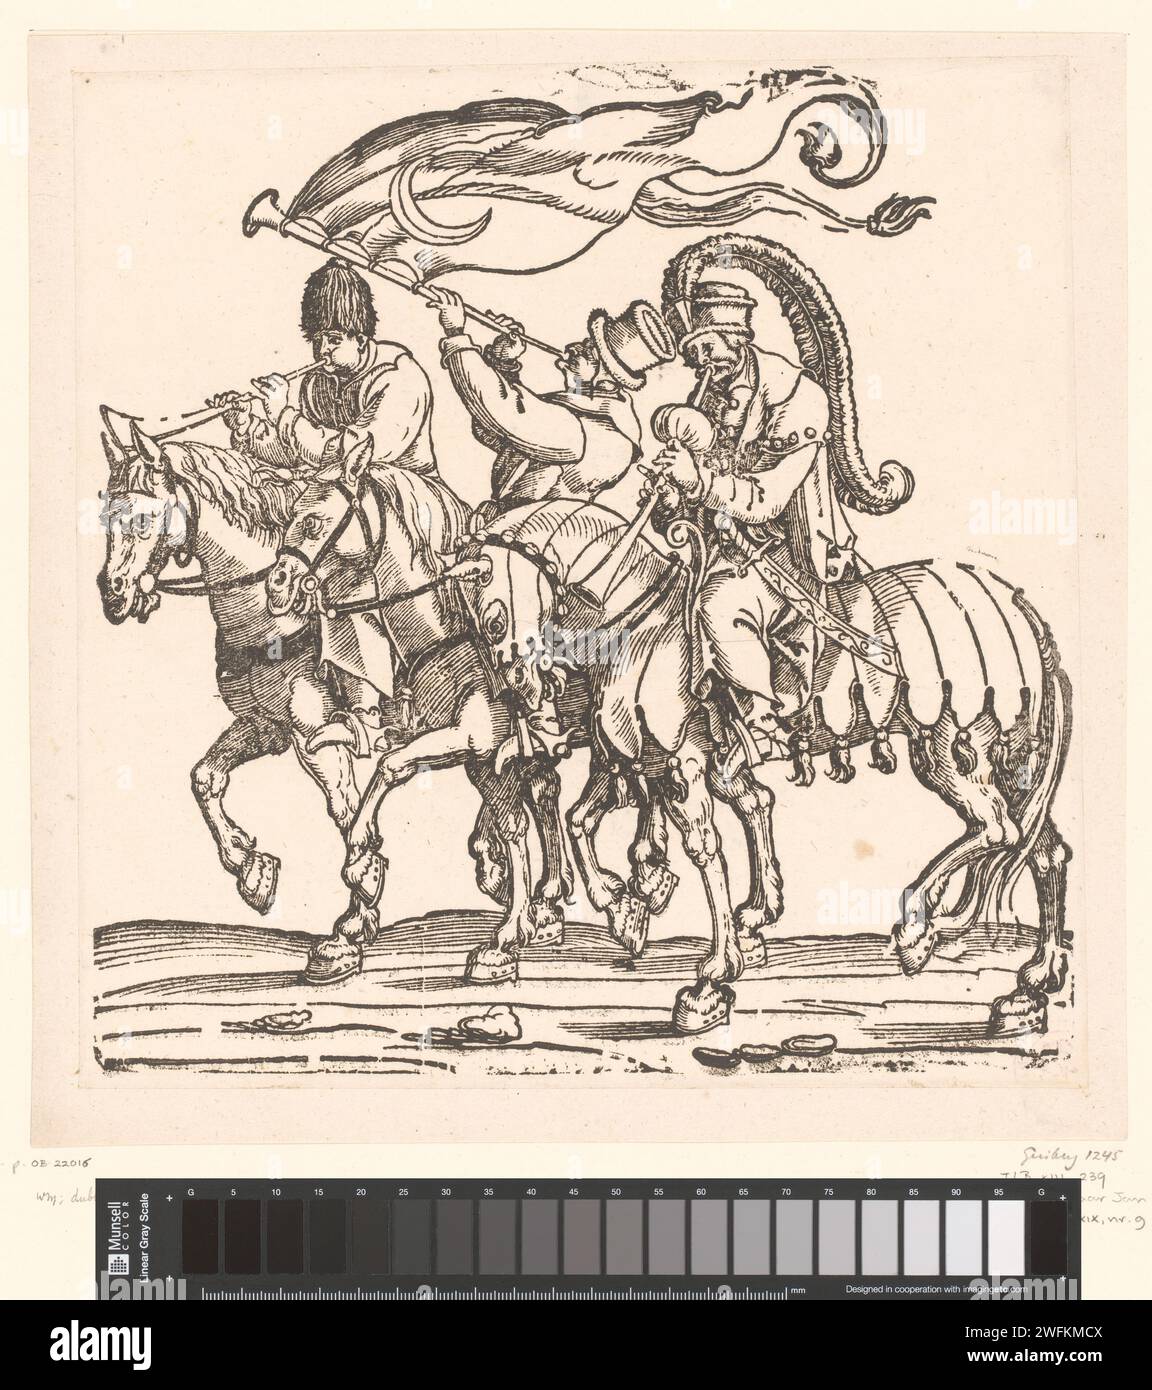 Trois musiciens turcs à cheval, Anonyme, d'après Jan Swart van Groningen, parade militaire sur papier imprimé 1530, concours. Races et peuples asiatiques : Turcs Banque D'Images